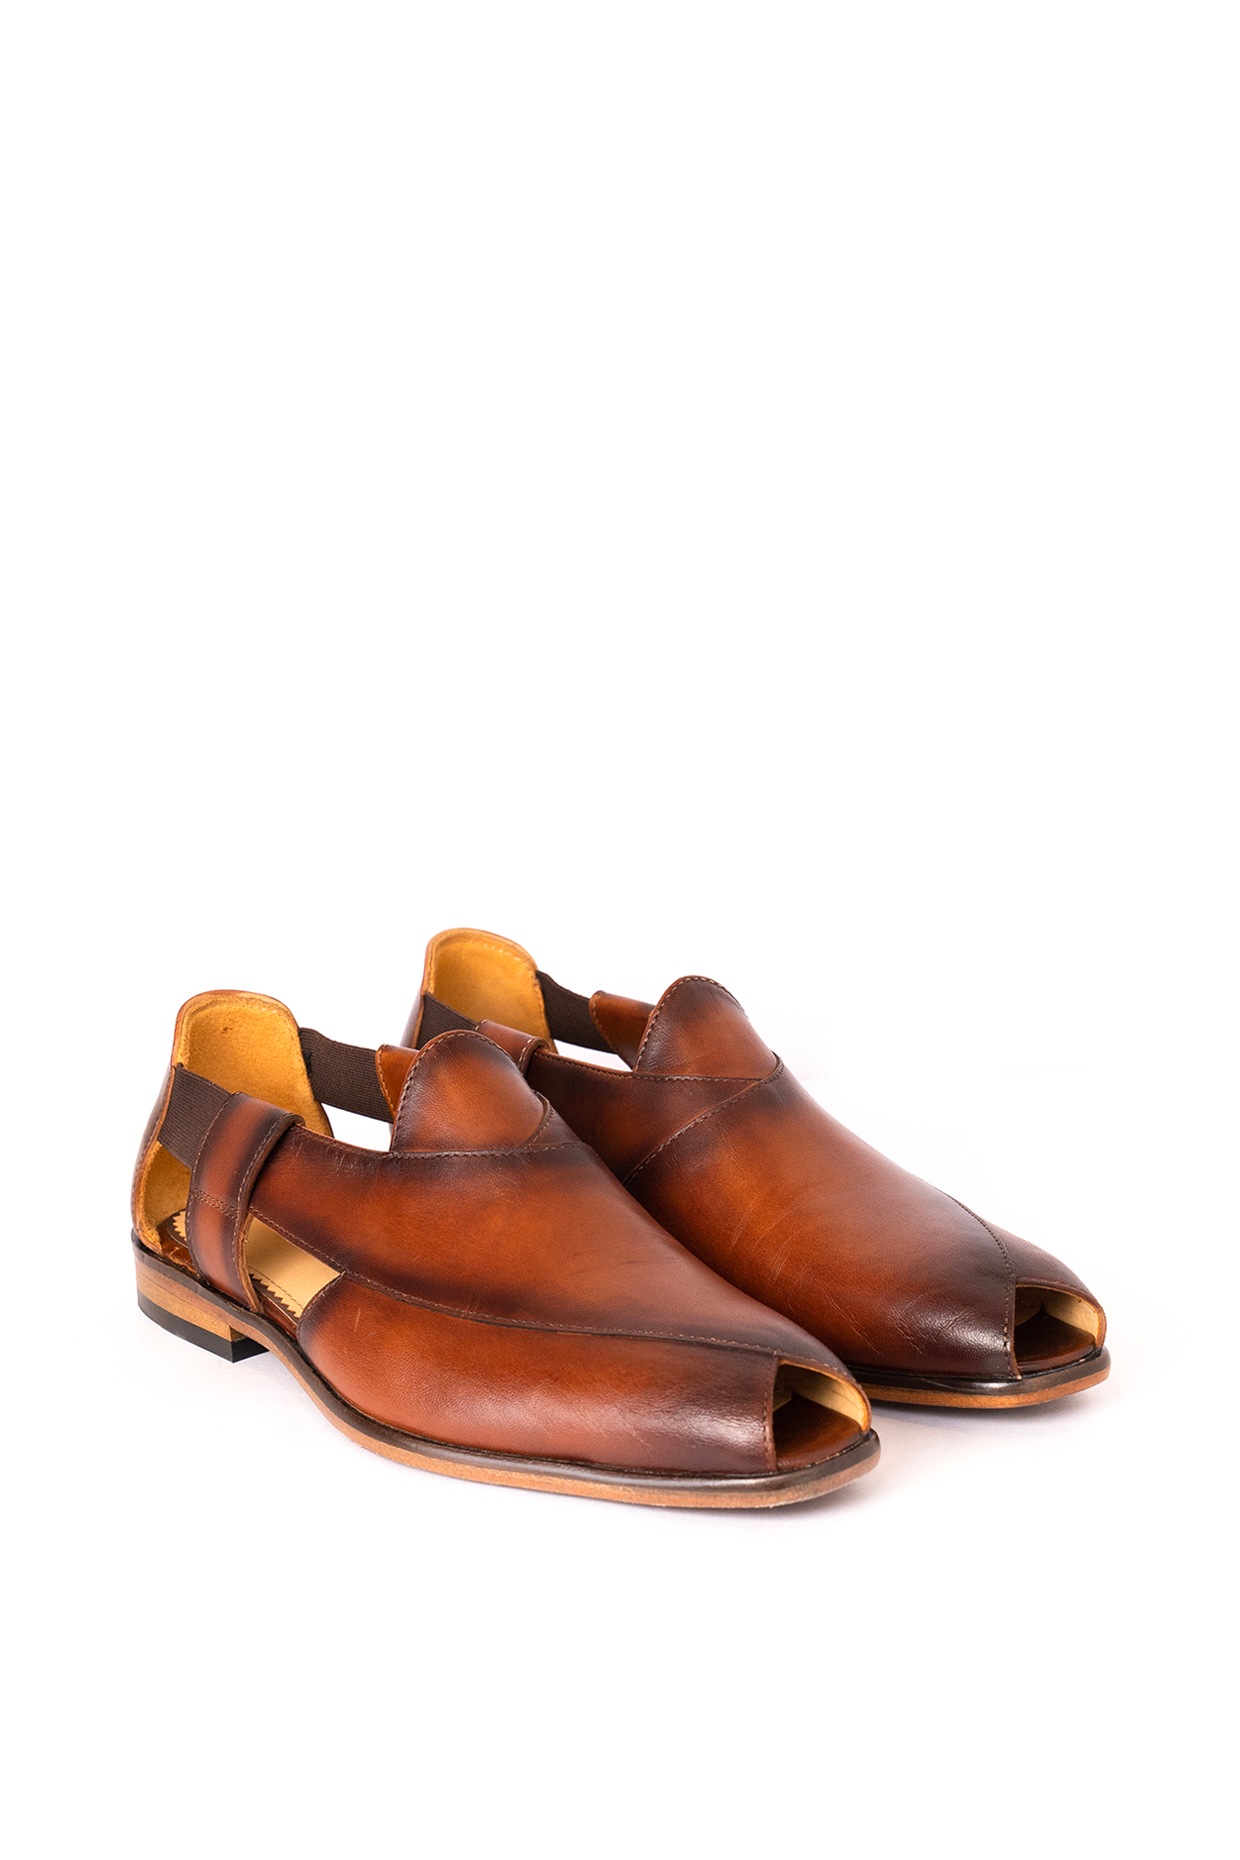 Handmade Leather Brown Kaptaan Chappal High Heel Peshawari Charsadda Men  Sandals | eBay